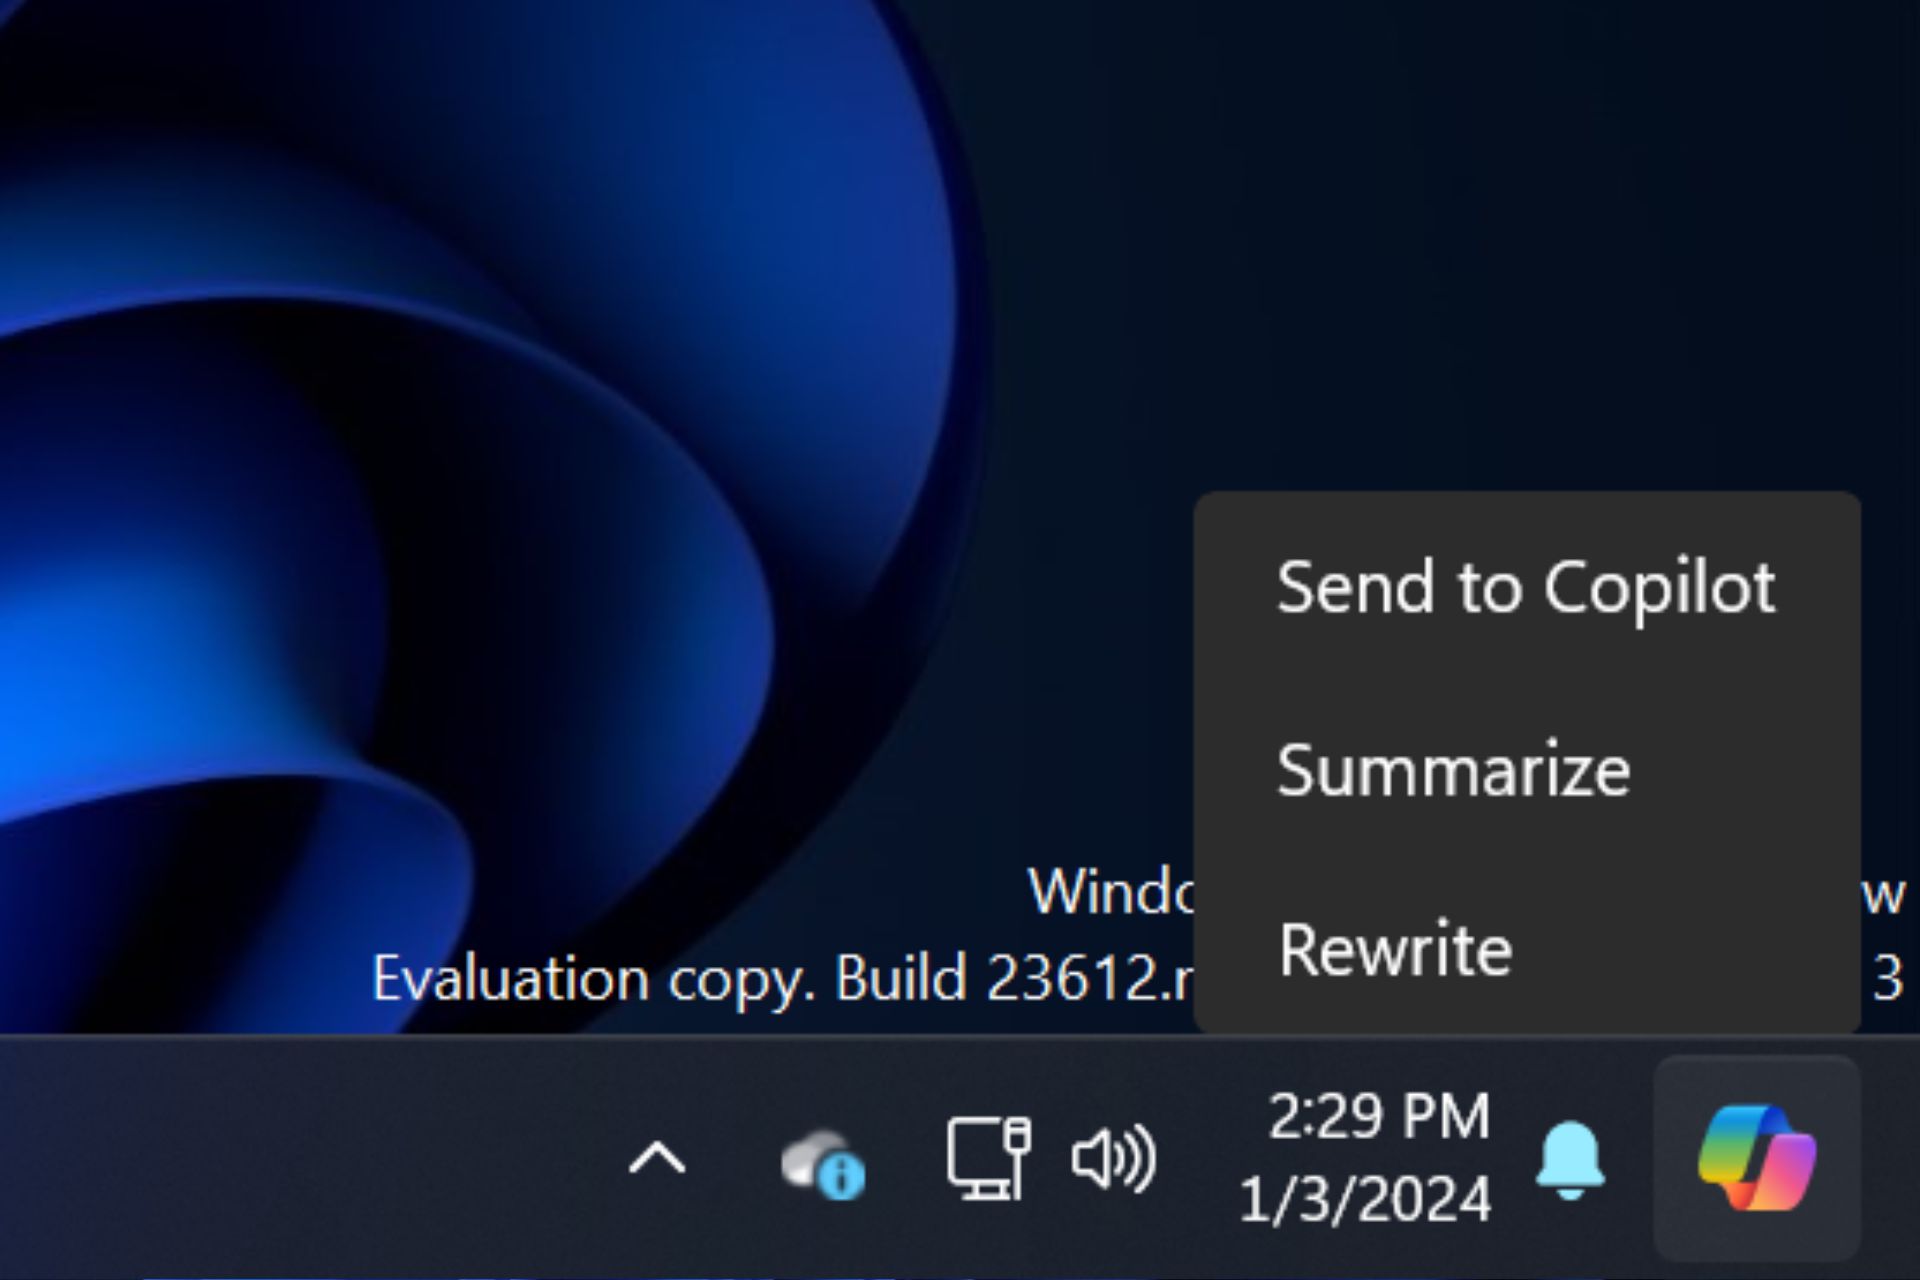 Windows Copilot summarize